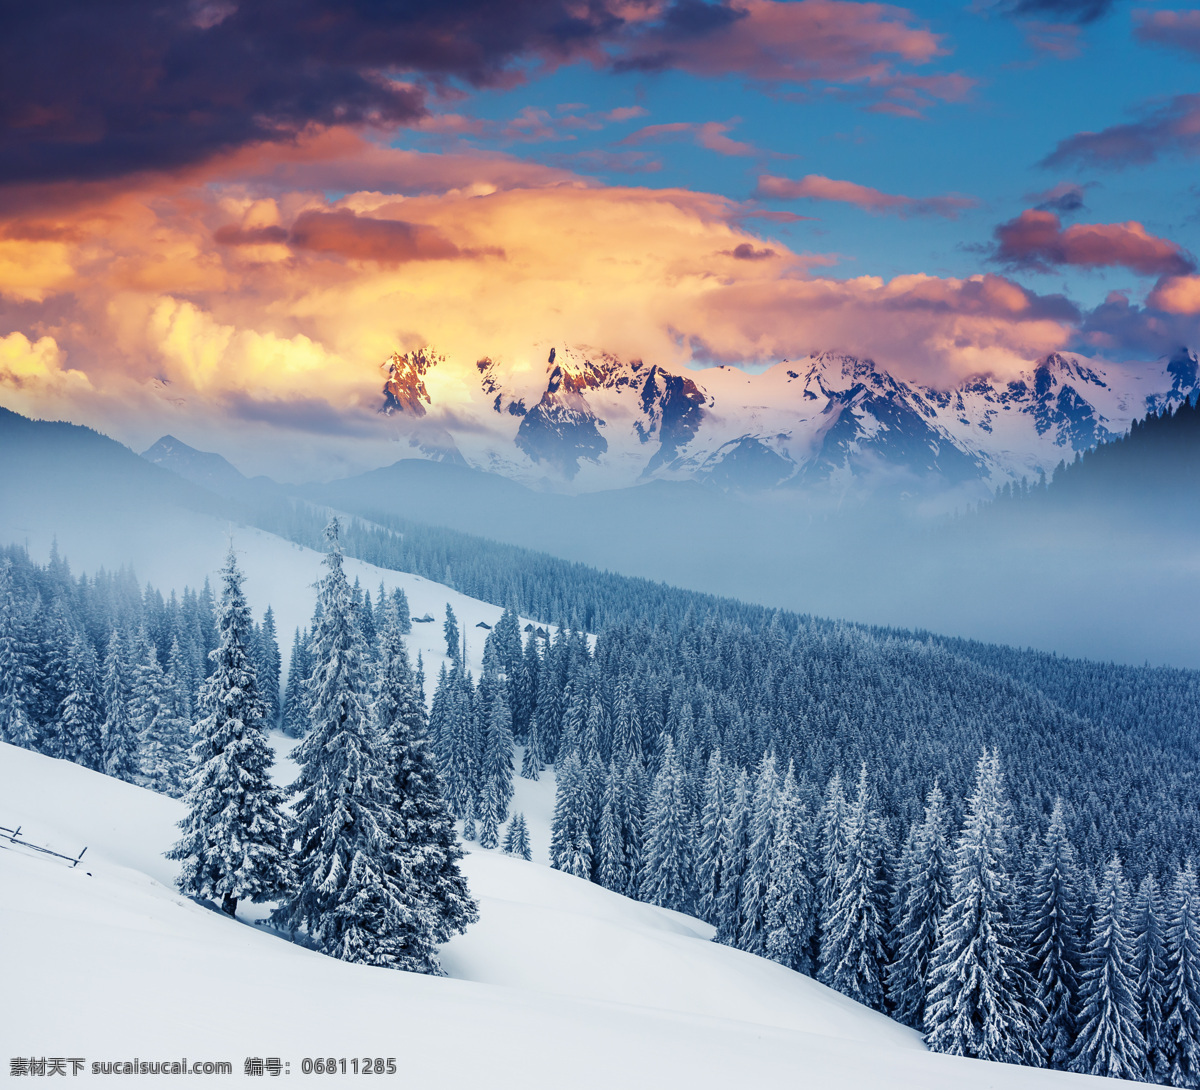 傍晚 时分 美丽 雪地 树林 傍晚时分 美丽的雪地 白雪 橙色云朵 美景 雪景 山水风景 风景图片